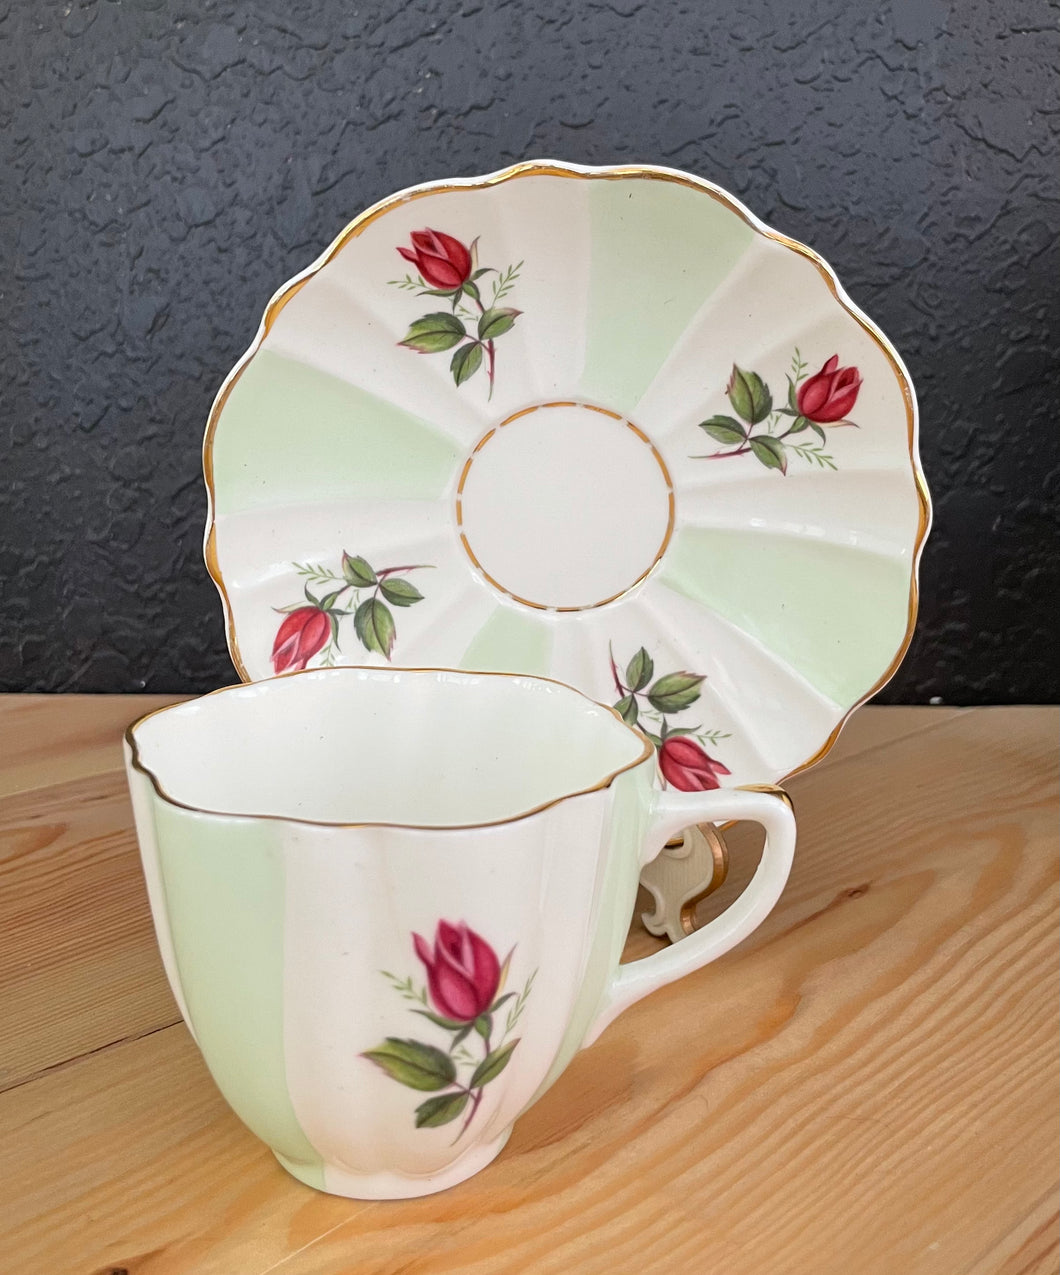 Vintage Crownford Rose Bone China Porcelain Tea Cup & Saucer